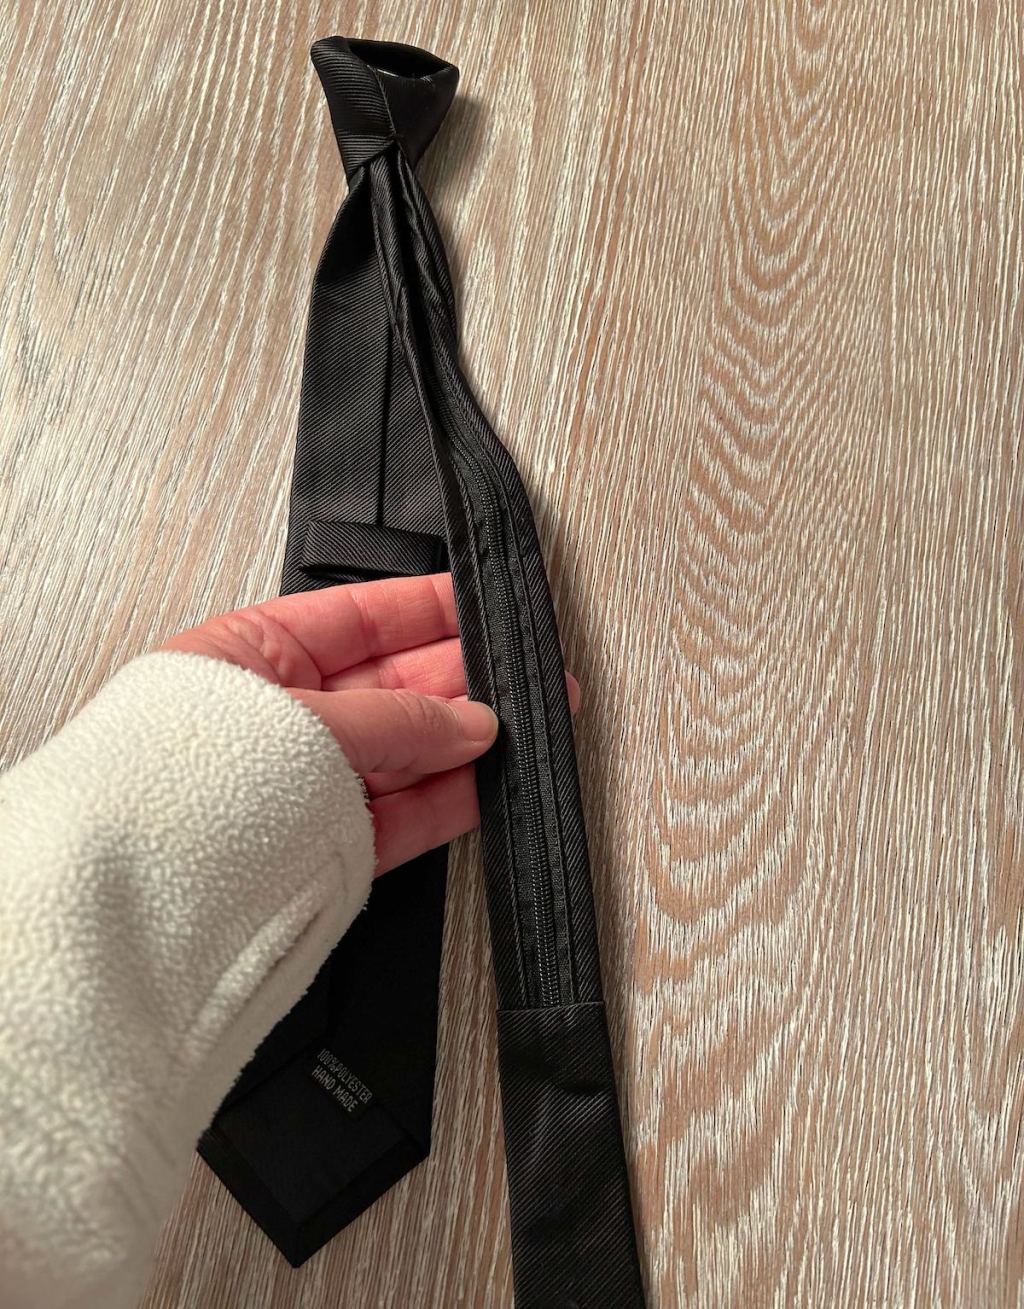 hand holding black tie on wood floor